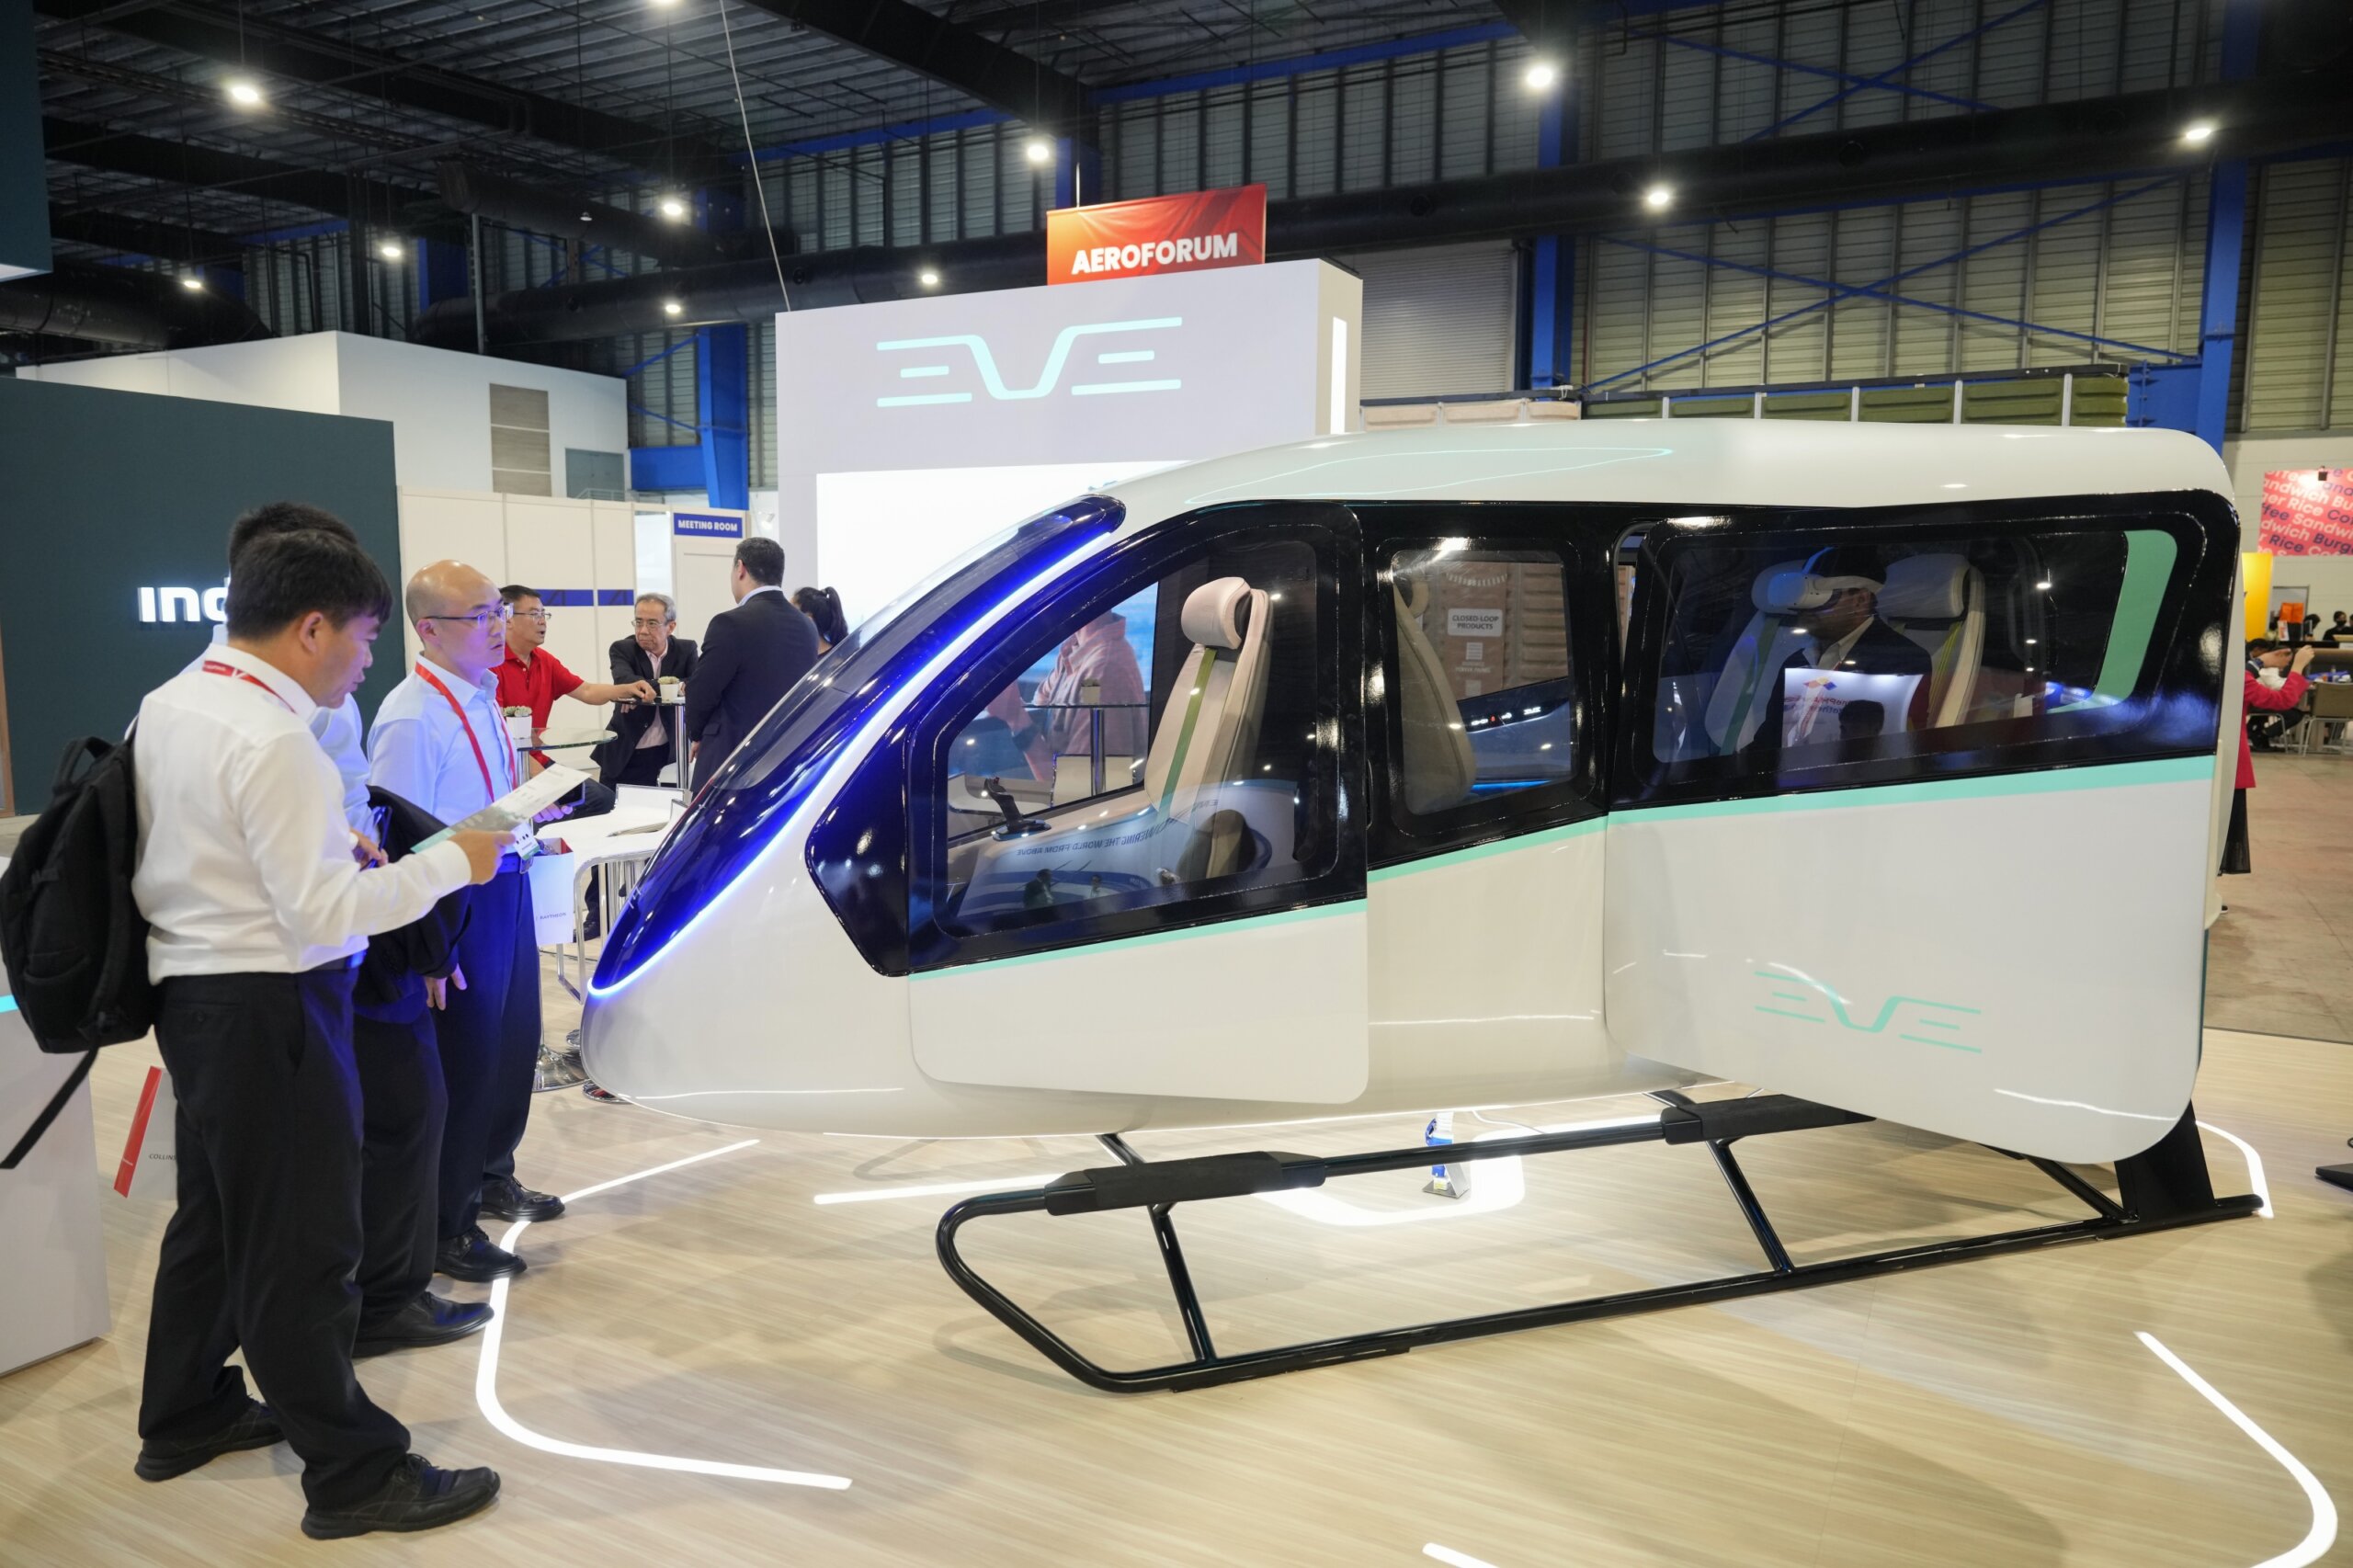 现代汽车与巴西航空公司爱菲尔达共同支持的Eve空中移动公司看好电动飞行出租车的未来